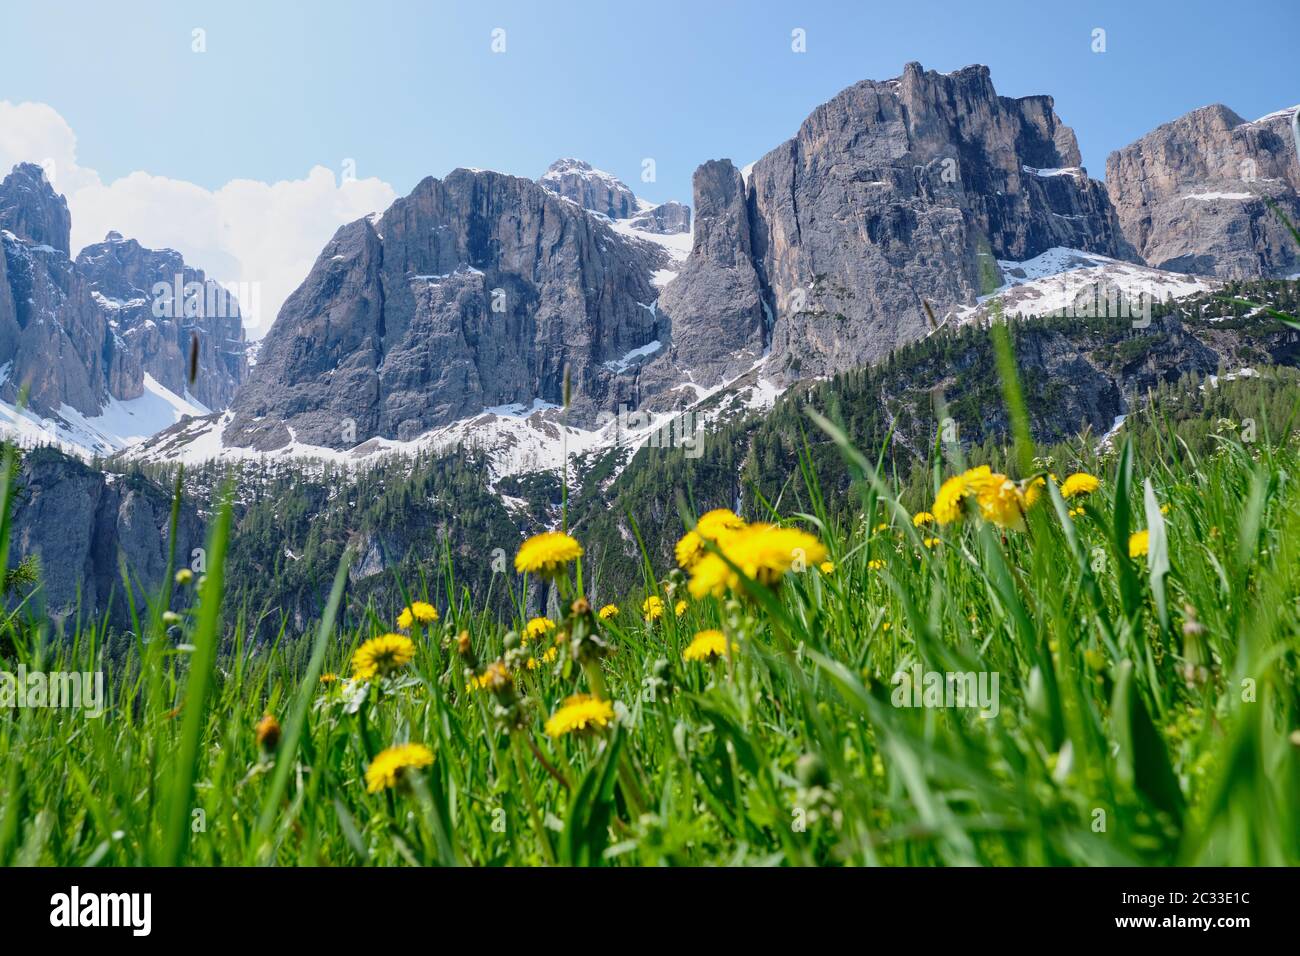 Immagine del paesaggio con montagne selvagge e rocce in Alto Adige in Italia in estate Foto Stock